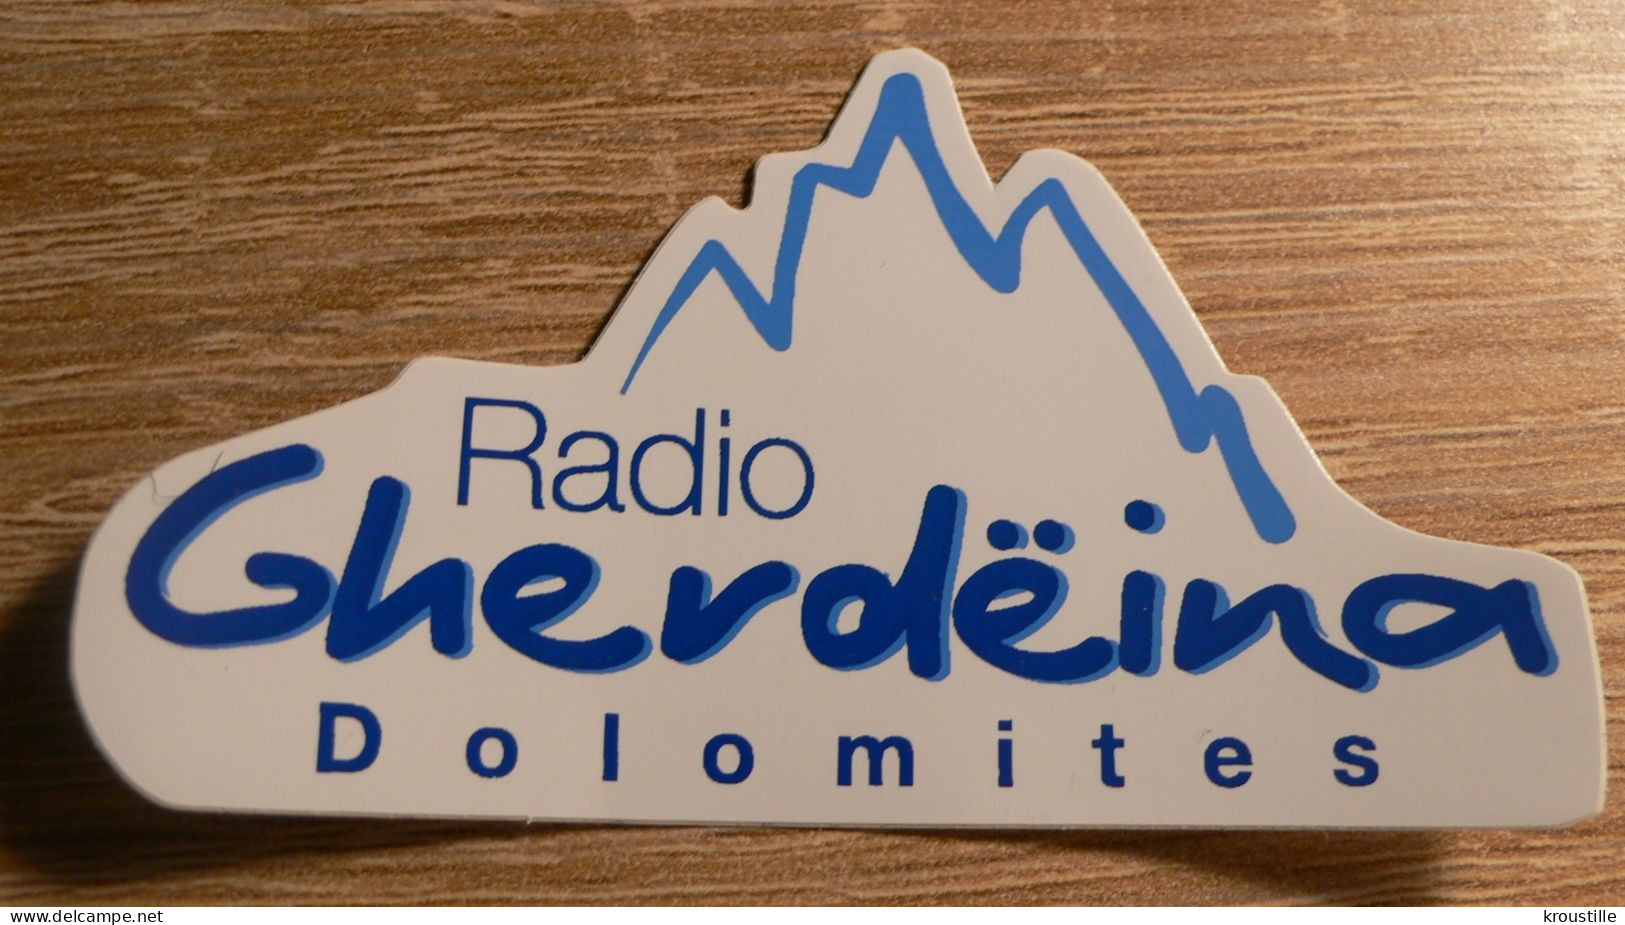 AUTOCOLLANT RADIO GHERDEINA DOLOMITES - ITALIE - Adesivi